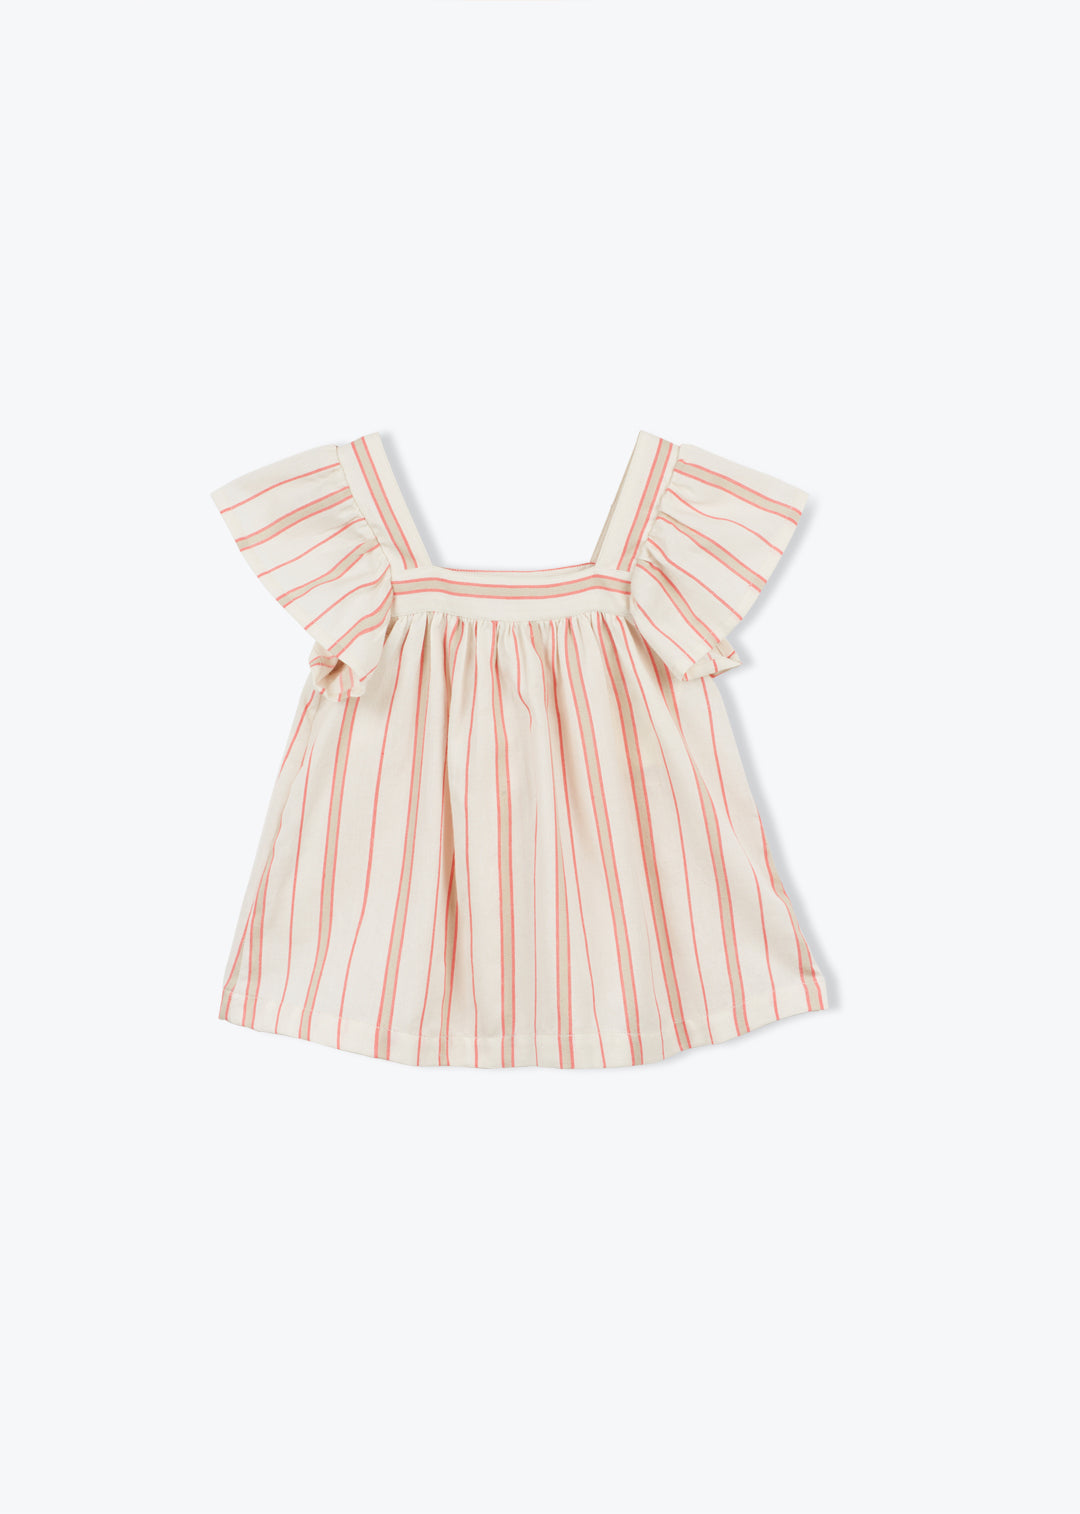 Blouse Girl Stripe Fleurine - قميص